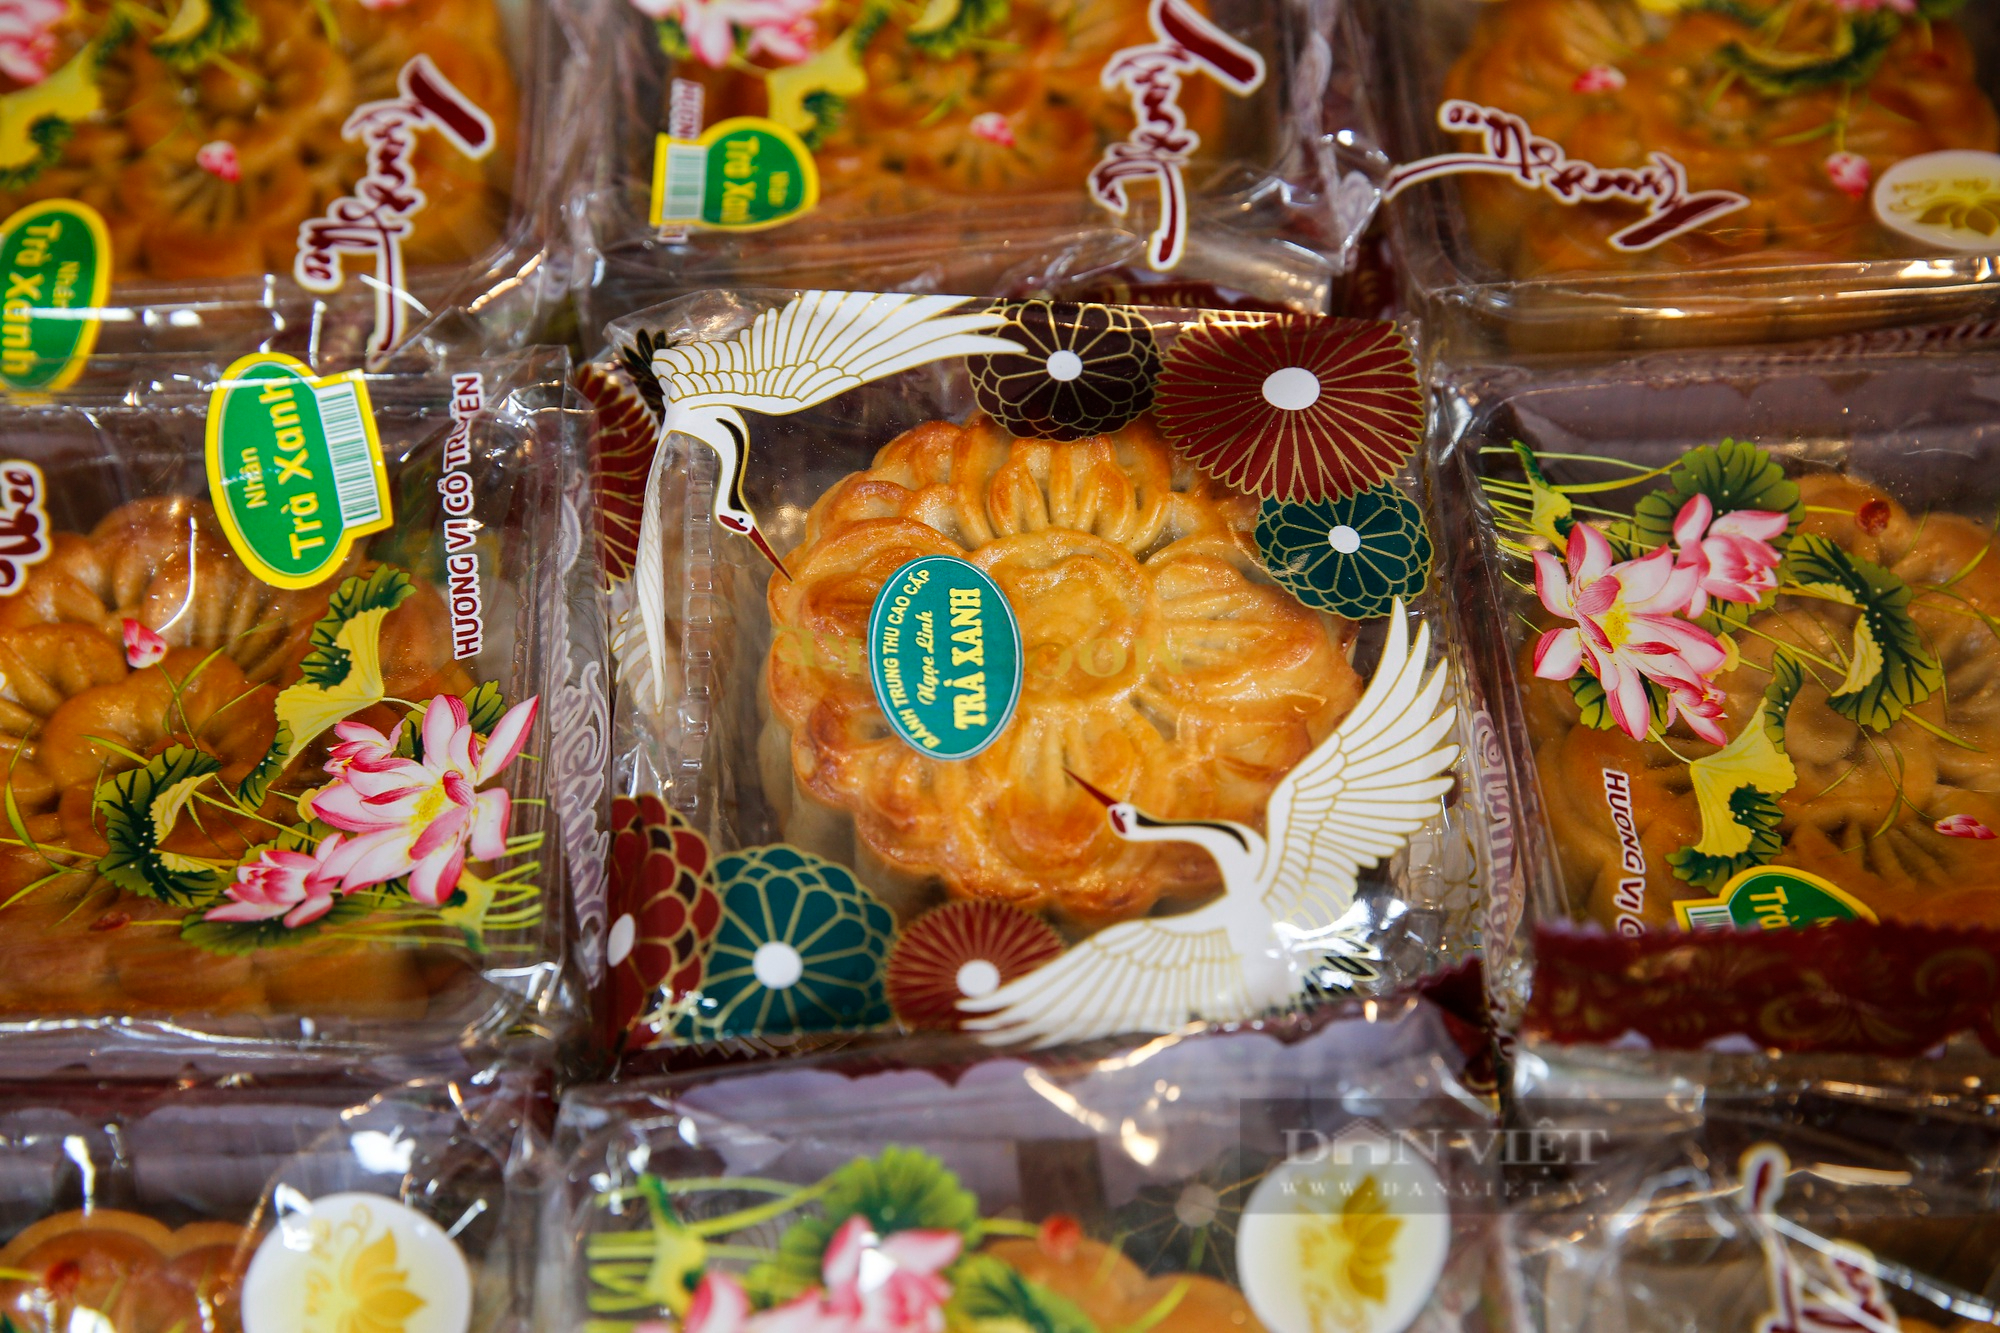 Bánh Trung thu đại hạ giá bày bán tràn lan trên vỉa hè Hà Nội - Ảnh 5.